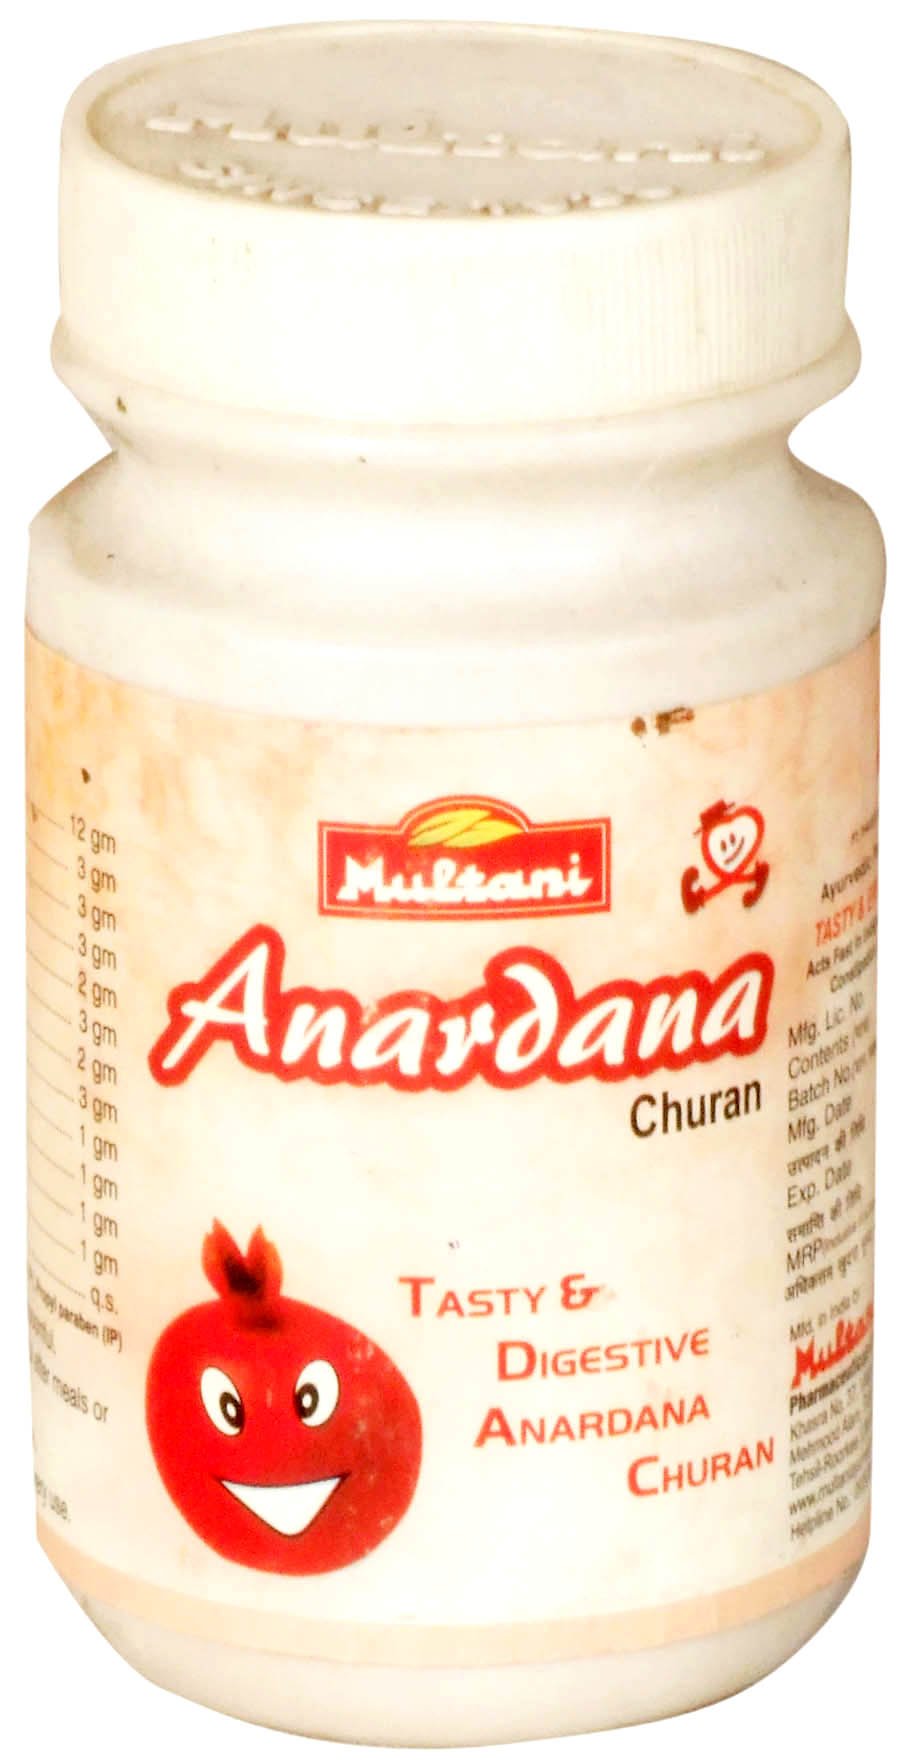 Anardana Churan (Tasty and Digestive Anardana Churan) - book cover